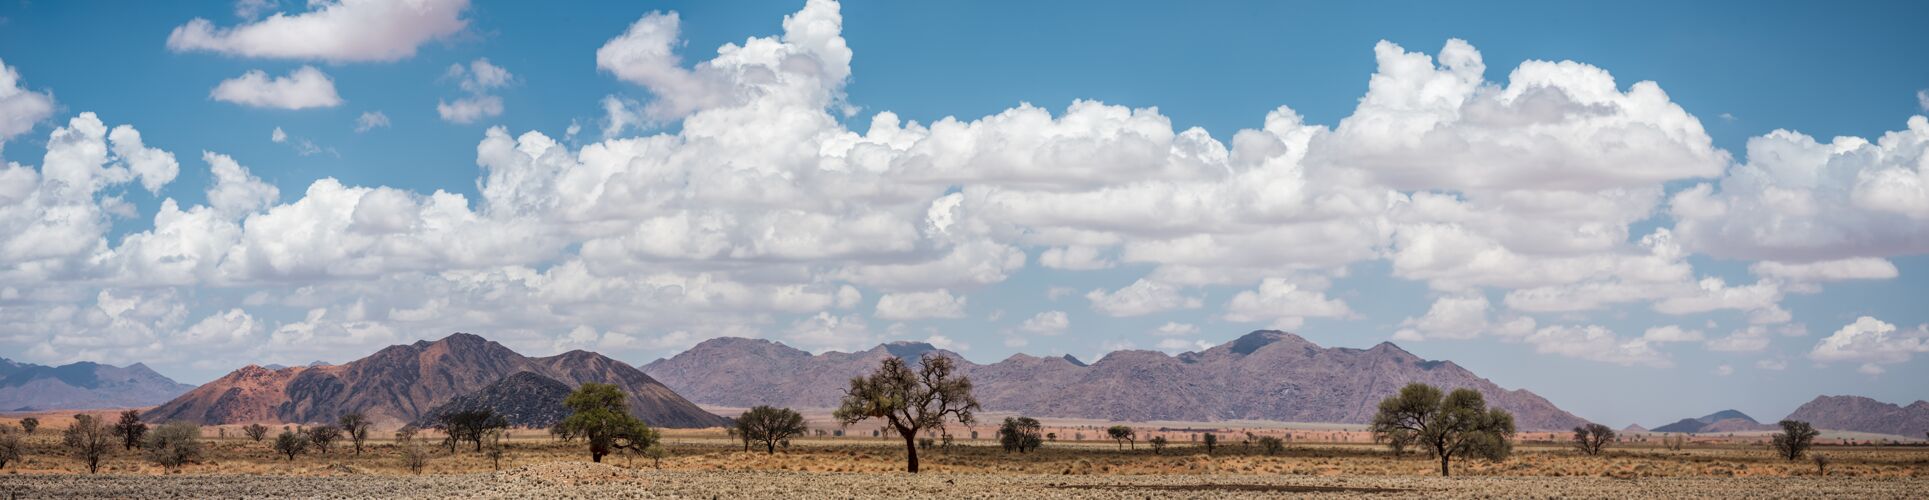 狩猎纳米比亚纳米布沙漠全景太阳岩石干燥